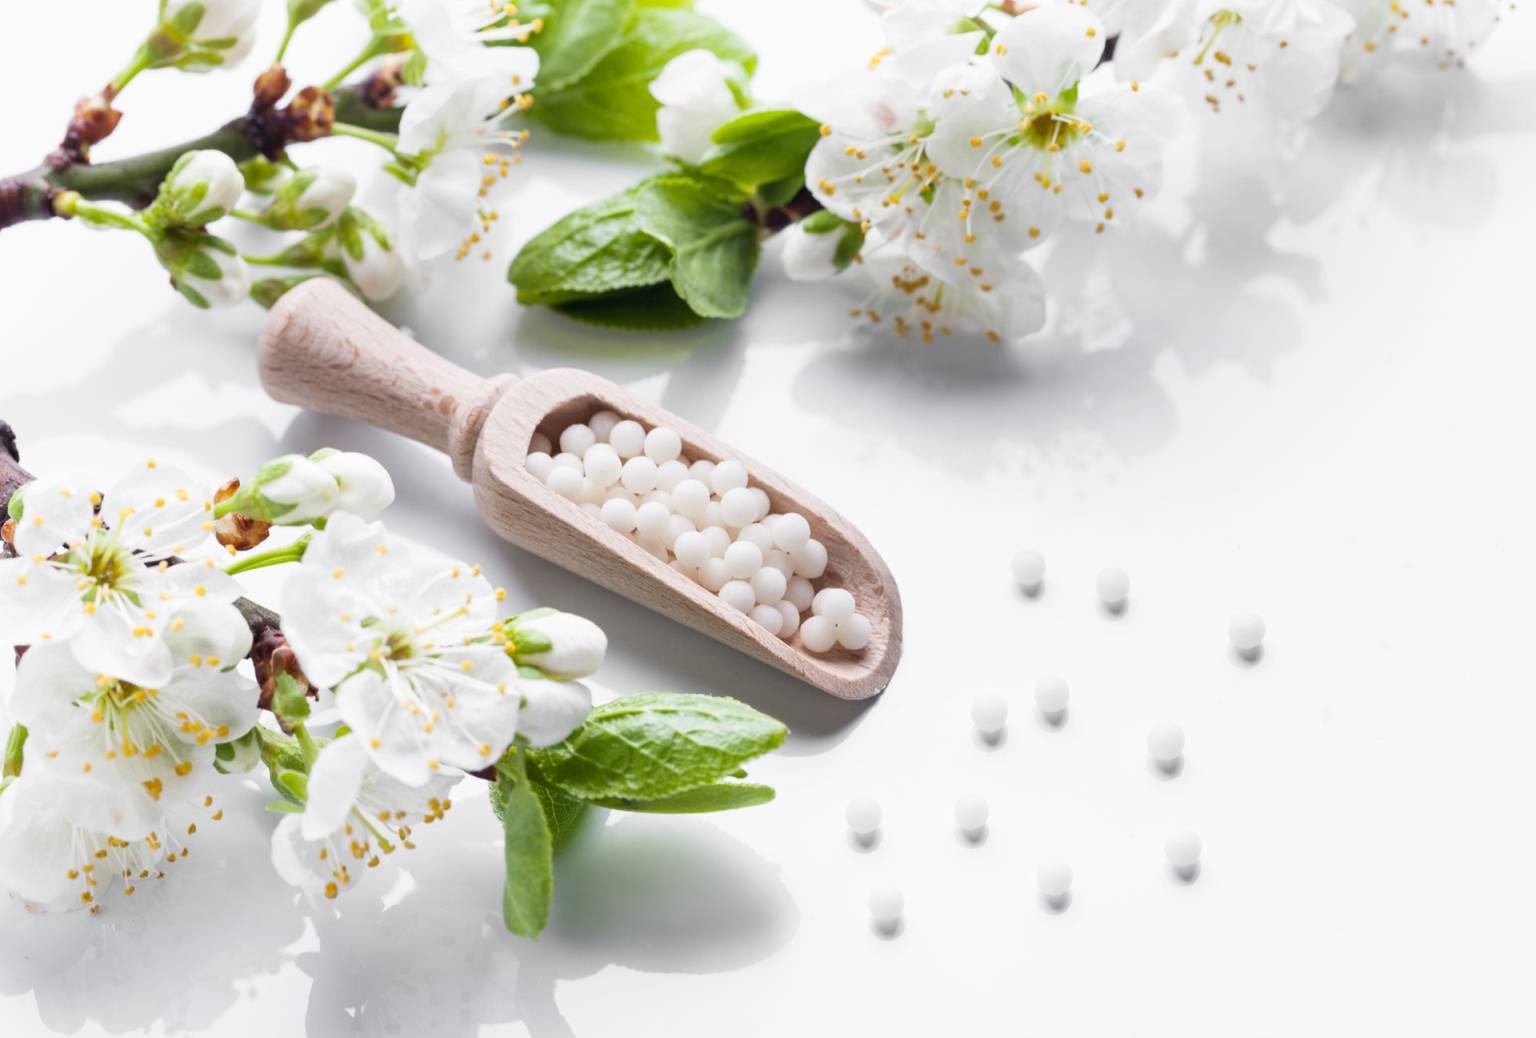 Leki homeopatyczne na alergię na pyłki. Na białym tle leży drewniana łyżeczka z granulkami leku homeopatycznego, wokół leżą kwiaty jabłoni i rozrzucone białe granulki leku.